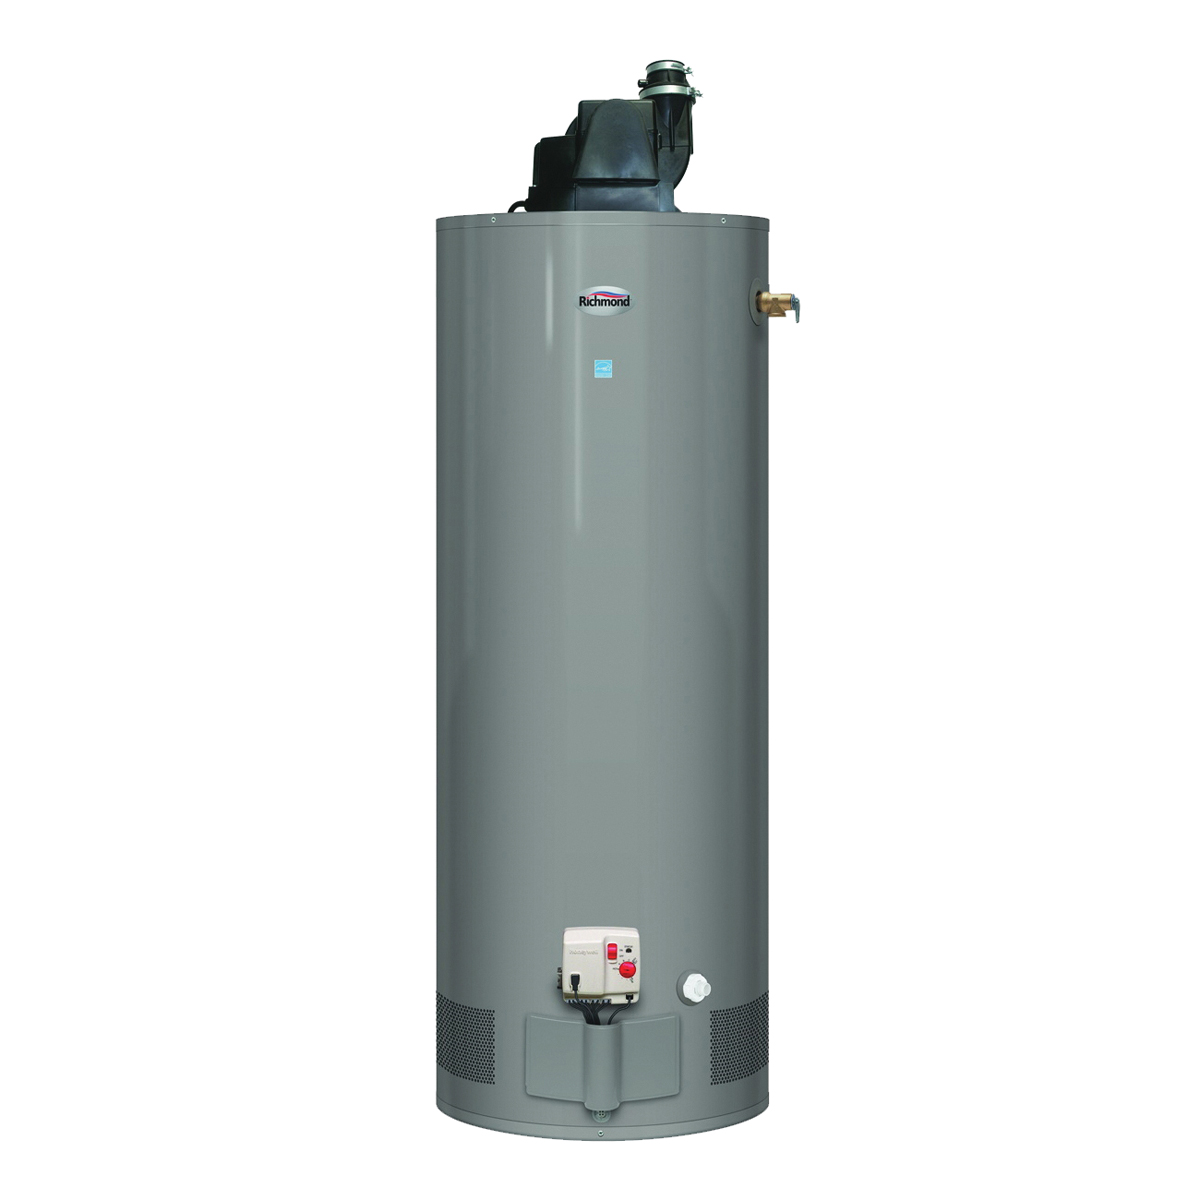 Essential Series 6GR50PVE2-42 Gas Water Heater, Natural Gas, 50 gal Tank, 78 gph, 42000 Btu/hr BTU